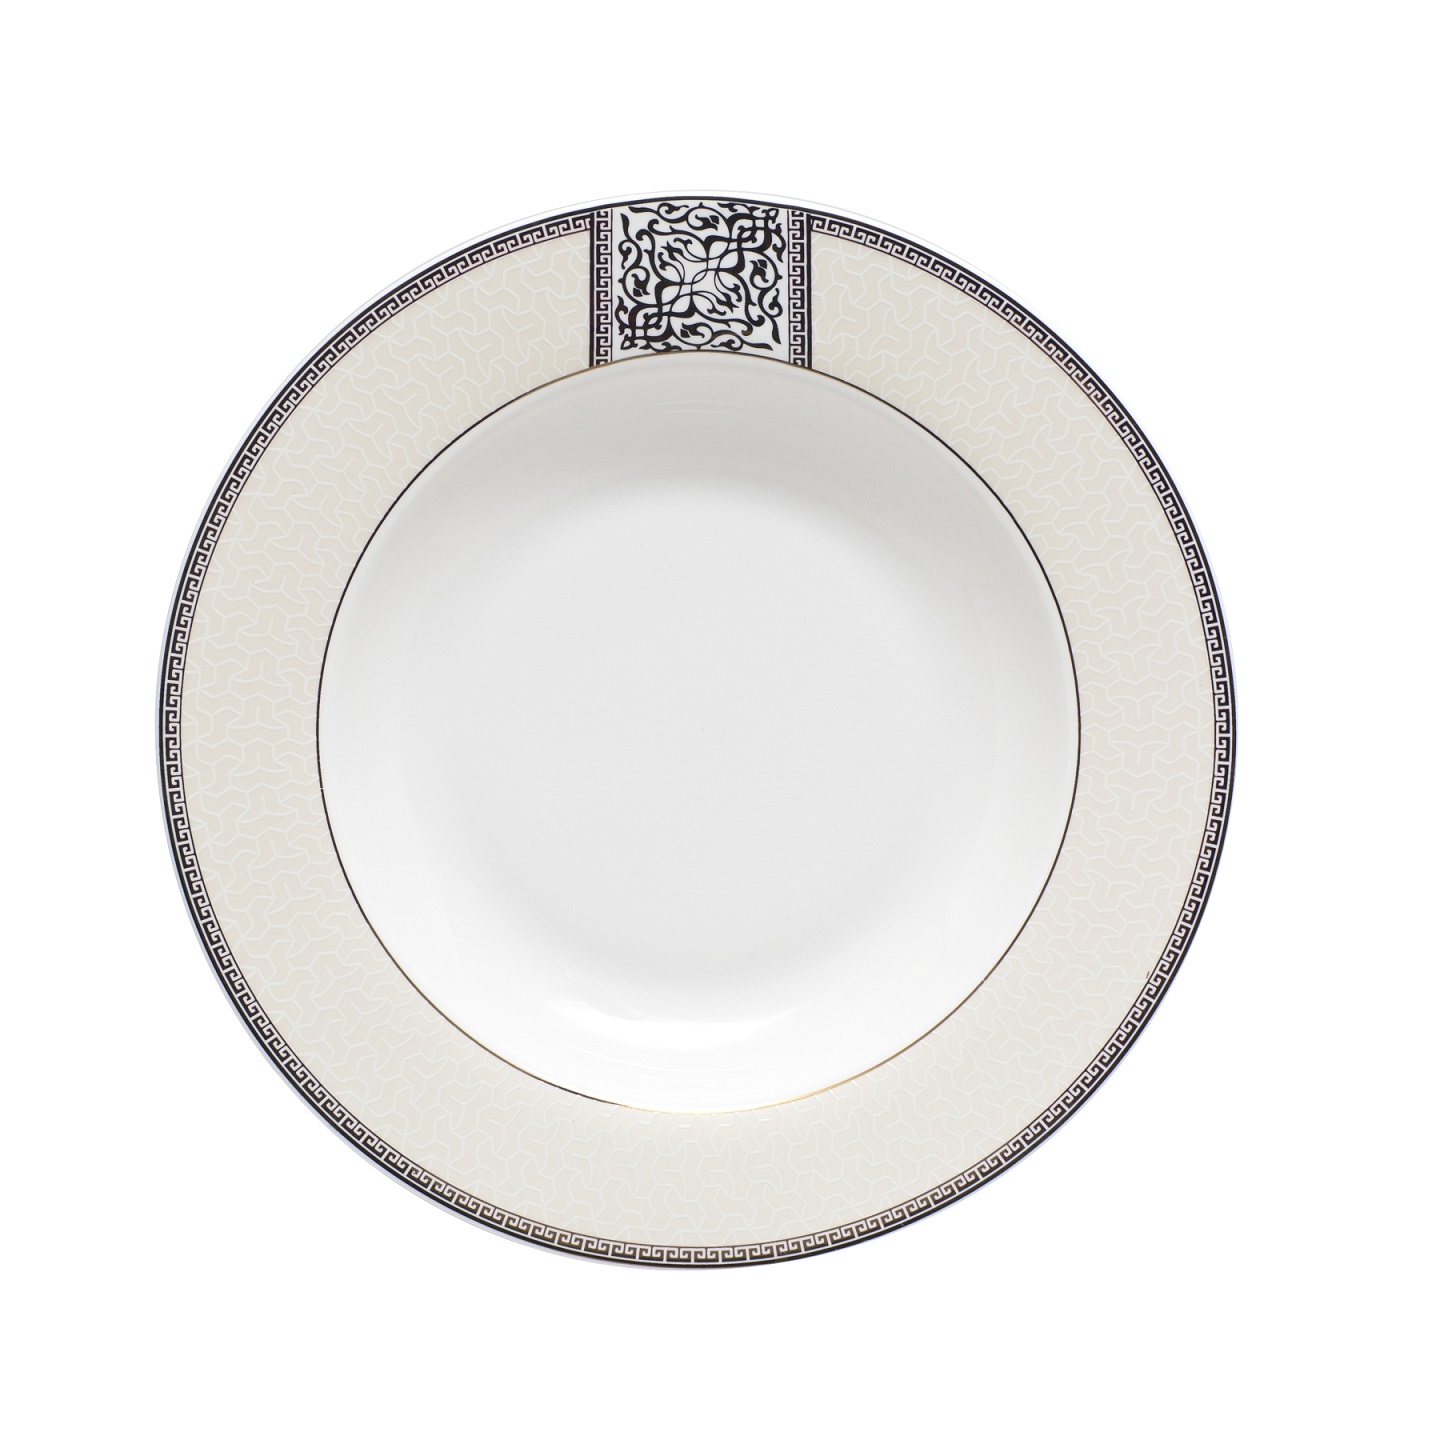 Тарелка суповая Fioretta Dynasty TDP082 23см тарелка суповая magic metallic 22см fioretta cn1507